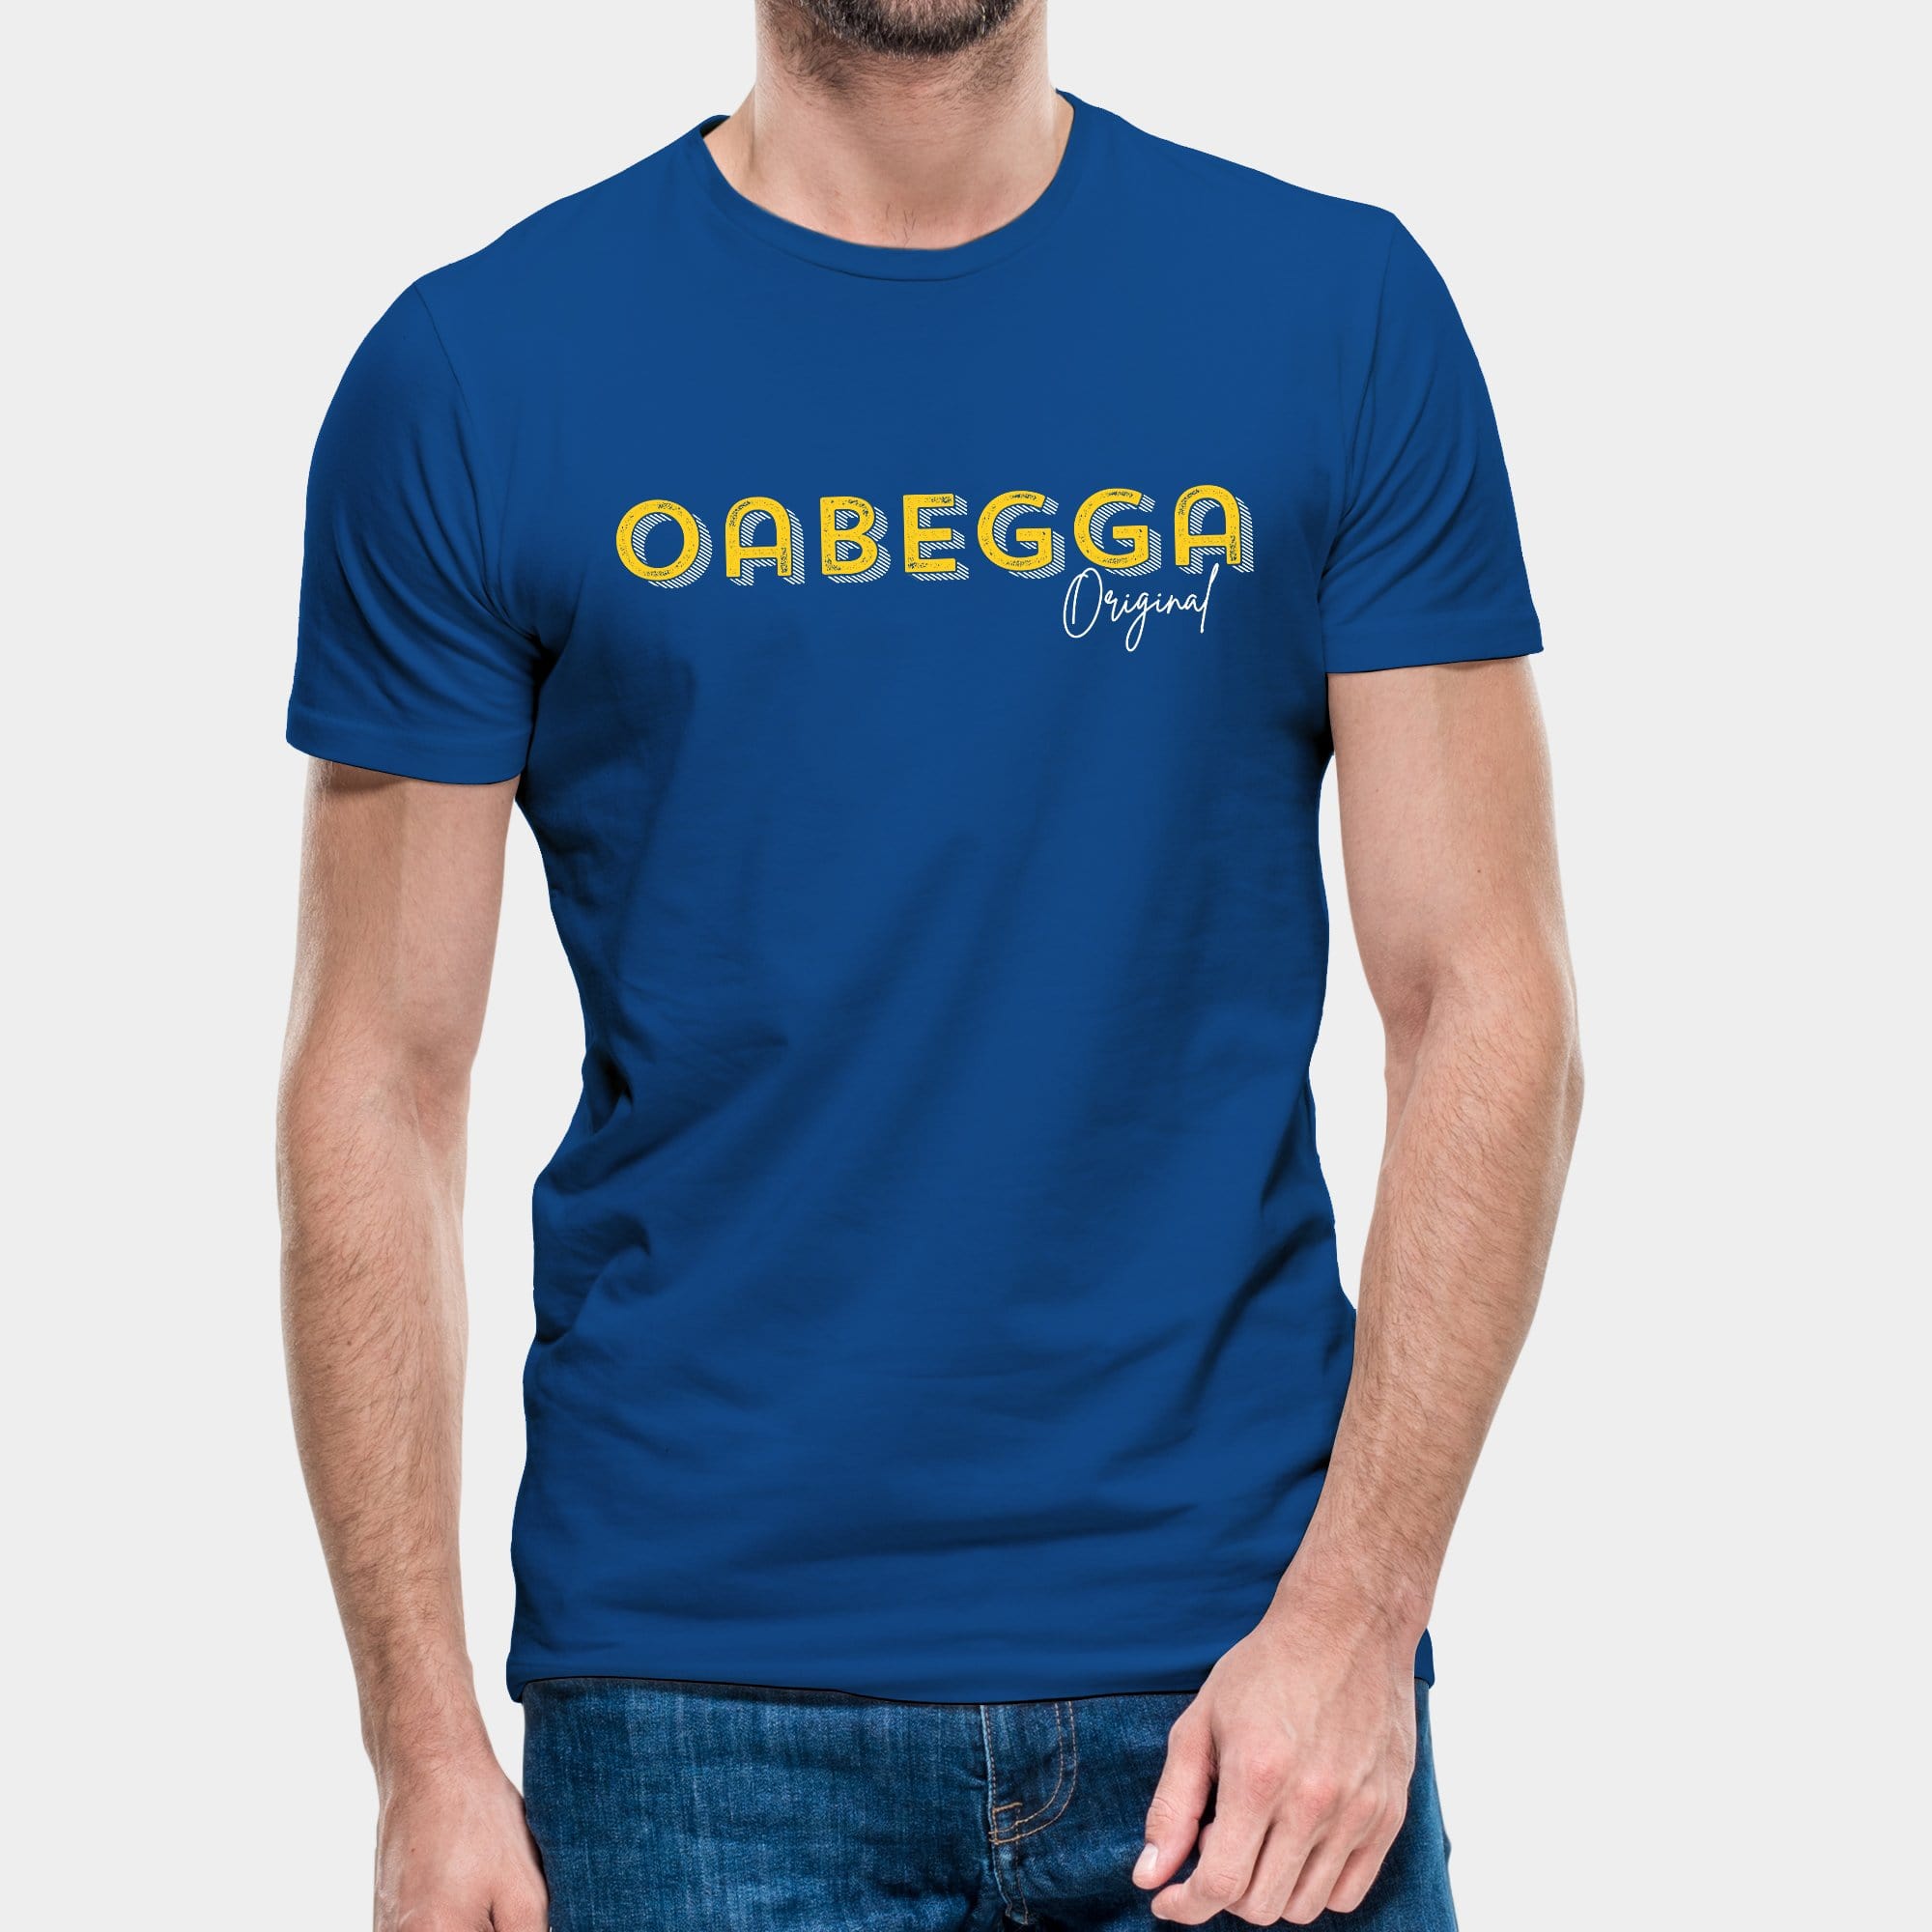 Projekt Herren-T-Shirt "Oabegga Original" S / royalblau - aus nachhaltiger und fairer Produktion